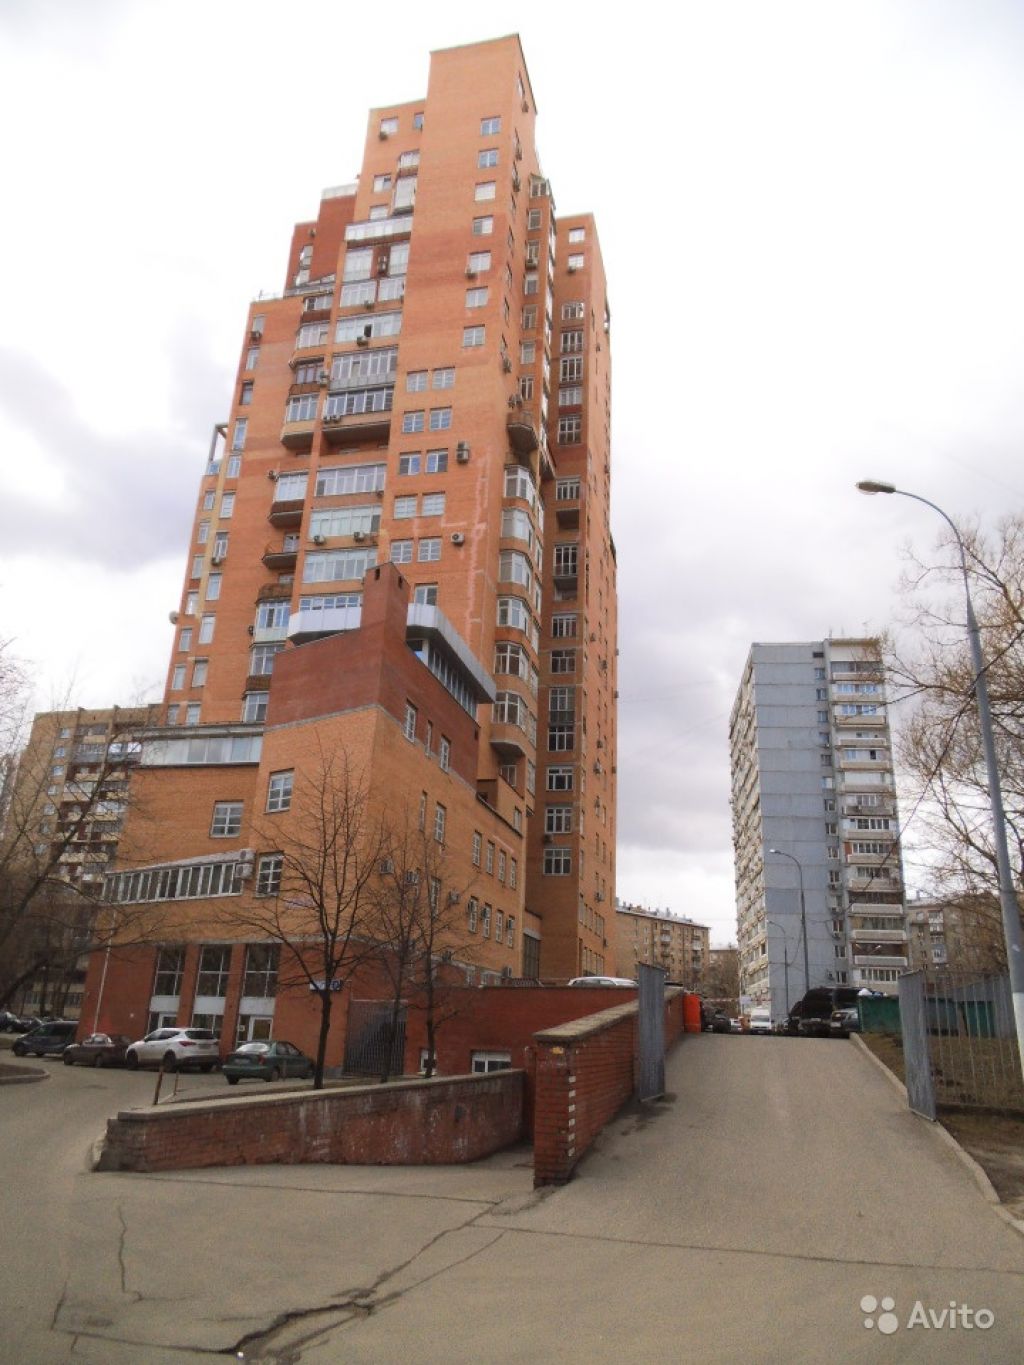 Продам квартиру 5-к квартира 198 м² на 13 этаже 23-этажного кирпичного дома в Москве. Фото 1